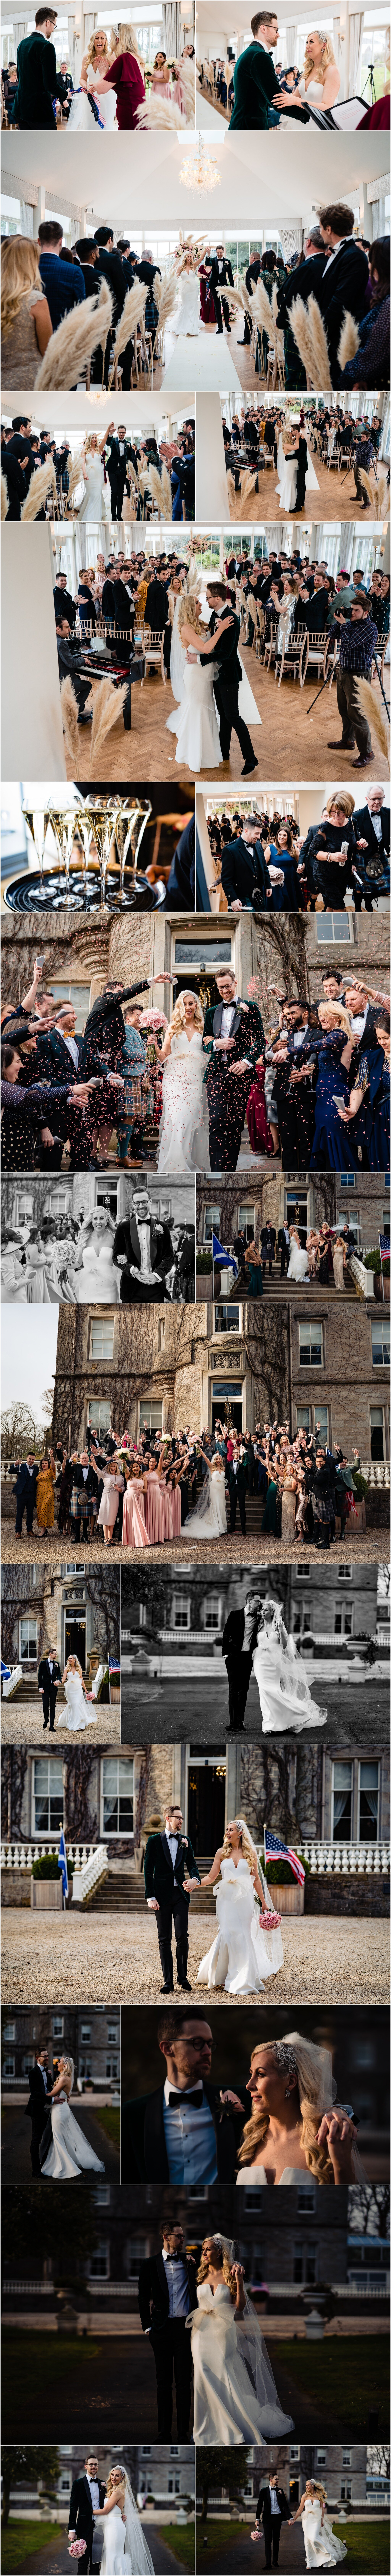 Carlowrie-Castle-wedding-Ricky-Baillie-Photography-Edinburgh-Wedding-Photohgrapher_0004.jpg